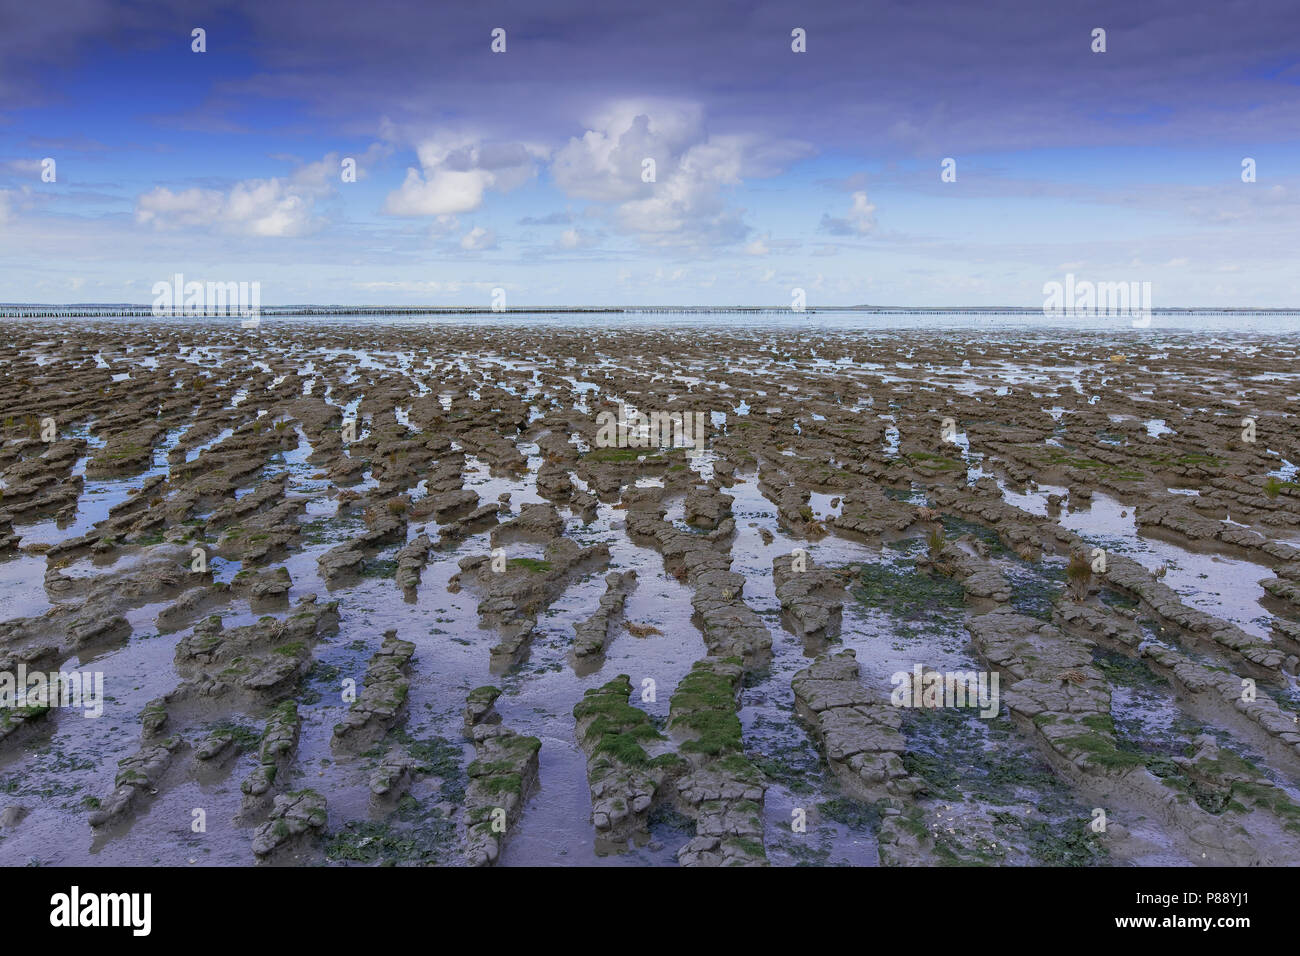 Waddengebied bij Ternaard, tidalflats at Ternaard Stock Photo